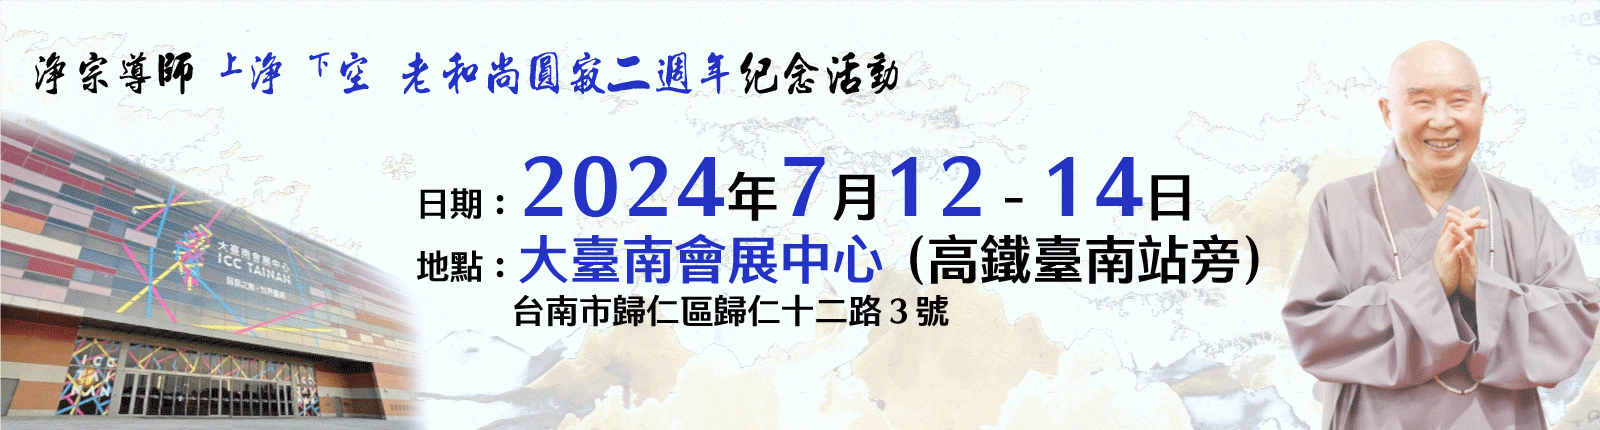 淨宗導師上淨下空老和尚圓寂二週年紀念活動公告-(台灣)